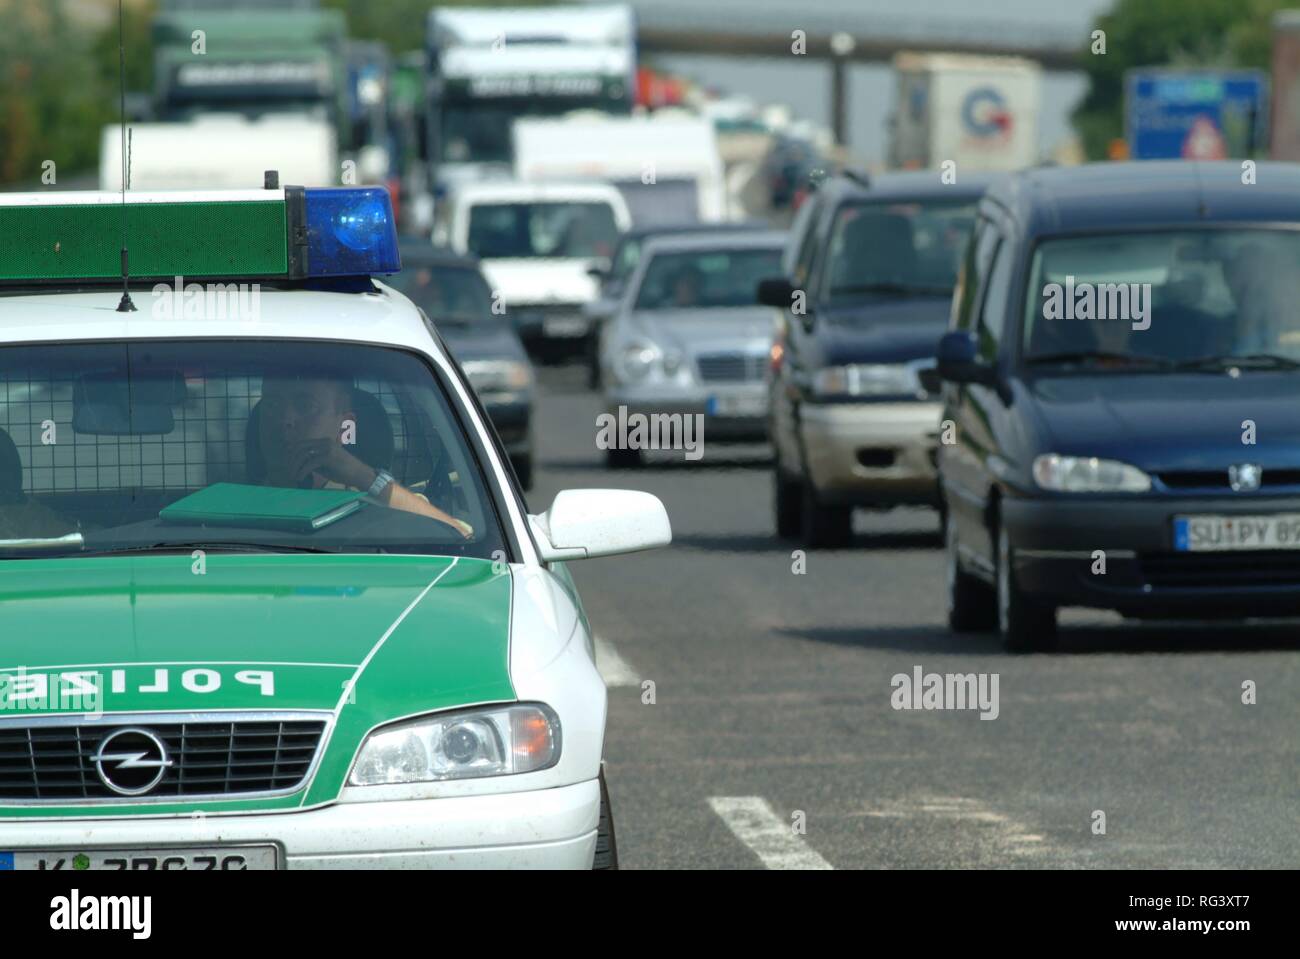 DEU, Germania, NRW: pattuglia di polizia blocca una corsia di marcia dopo un incidente. Highwaypolice, Highway patrol. Foto Stock